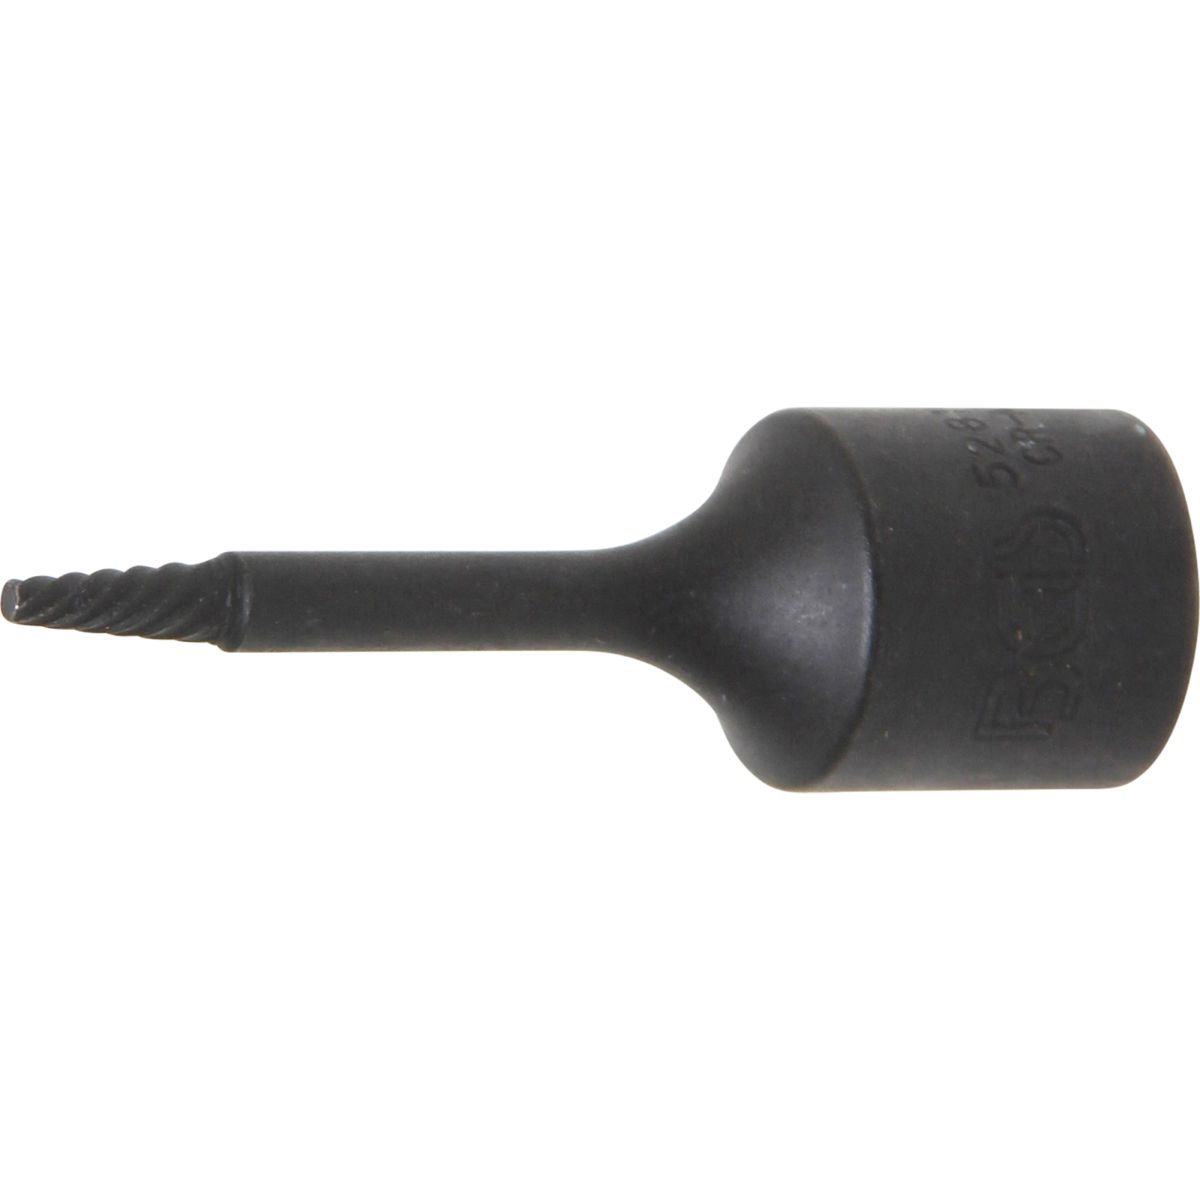 Spiral-Profil-Steckschlüssel-Einsatz / Schraubenausdreher | Antrieb Innenvierkant 10 mm (3/8") | 2 mm